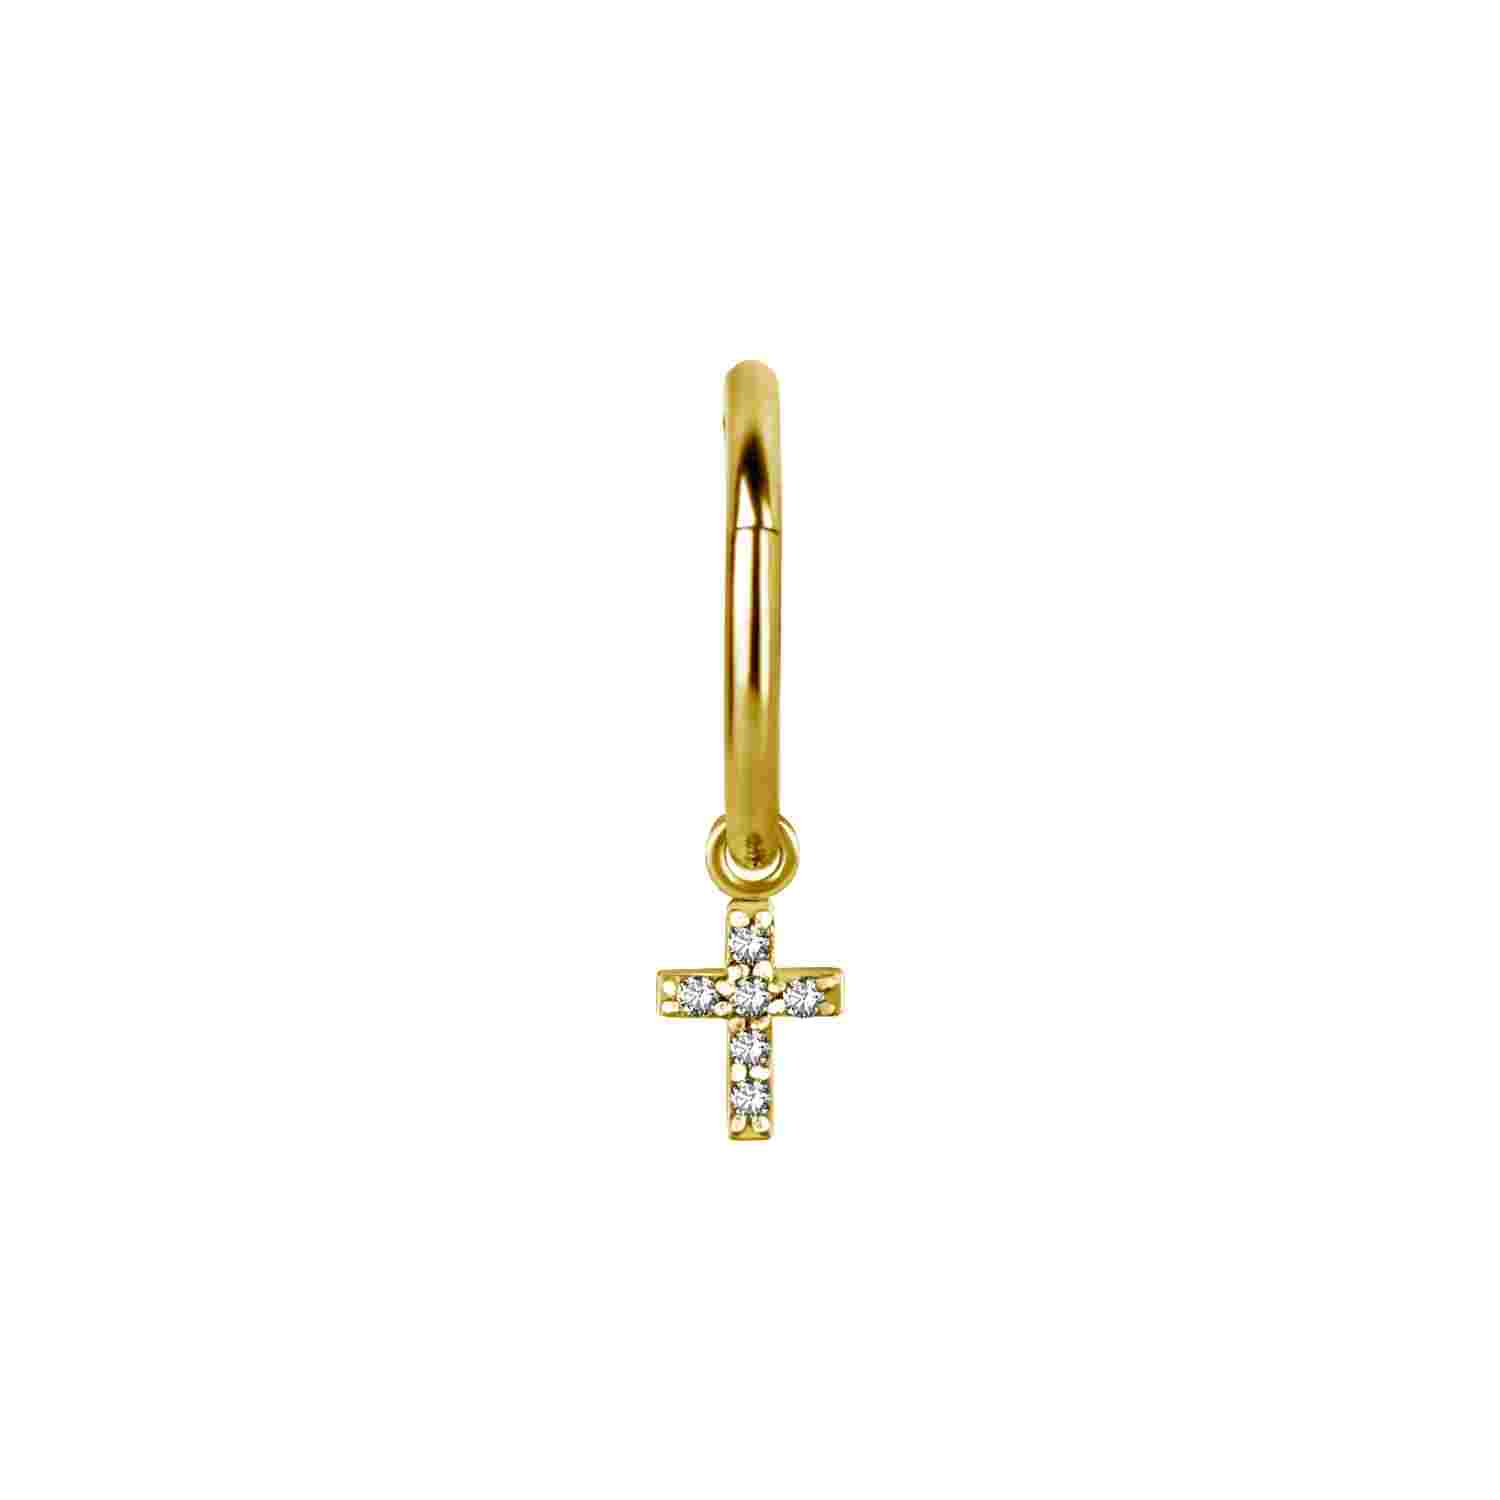 Hängsmycke till clicker - kors med kristaller - 24K PVD guld